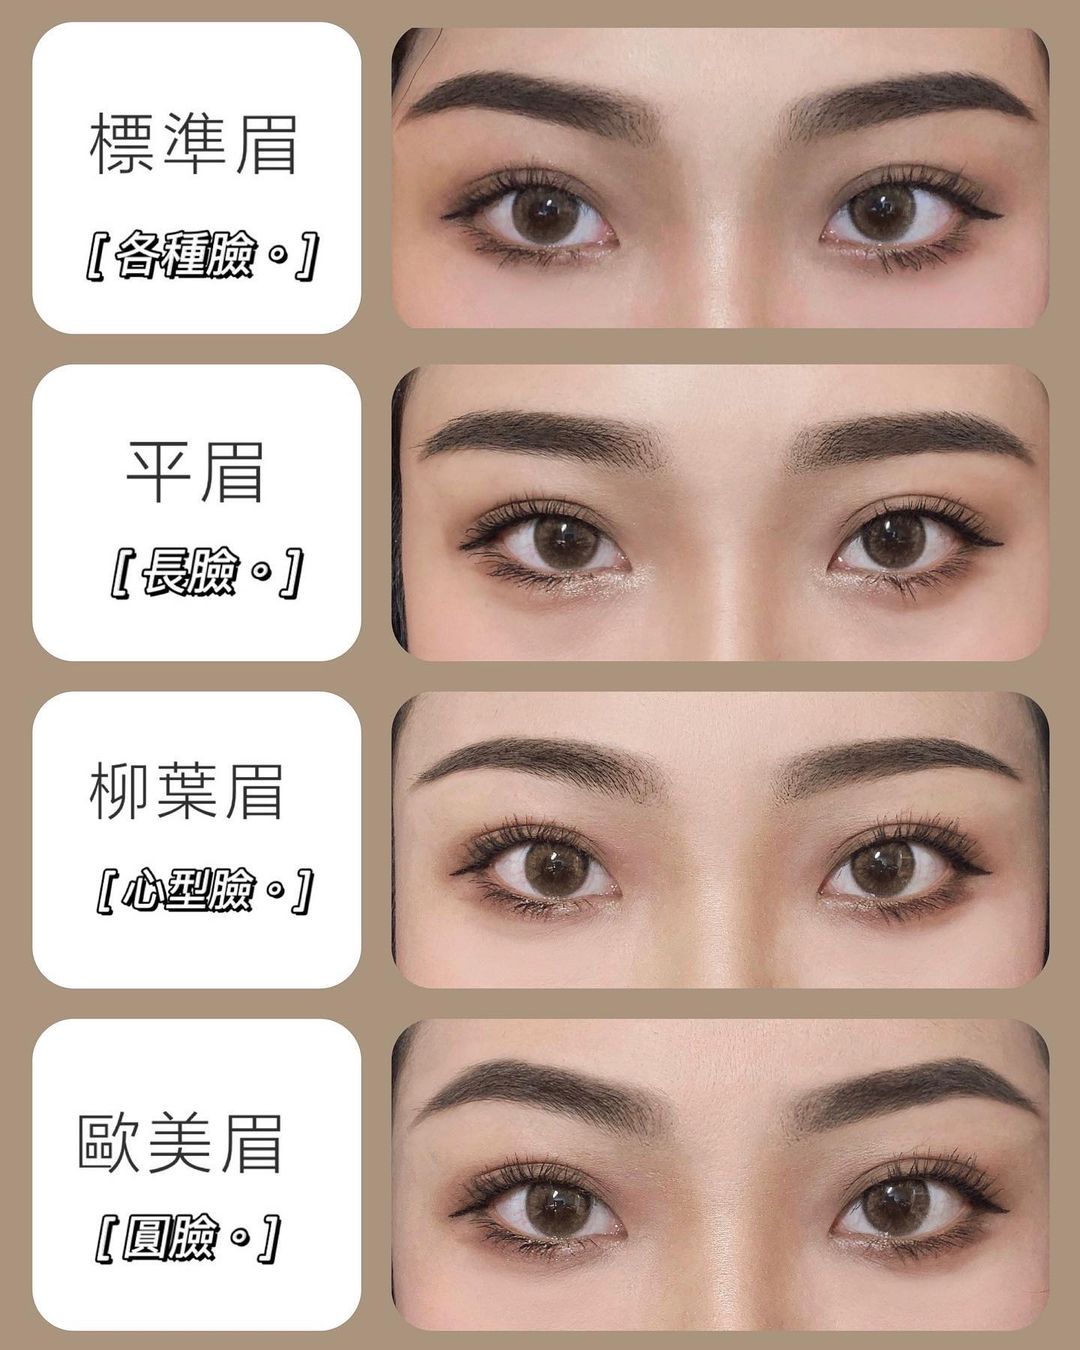 四種眉型💪🏼自然眉毛簡易教學